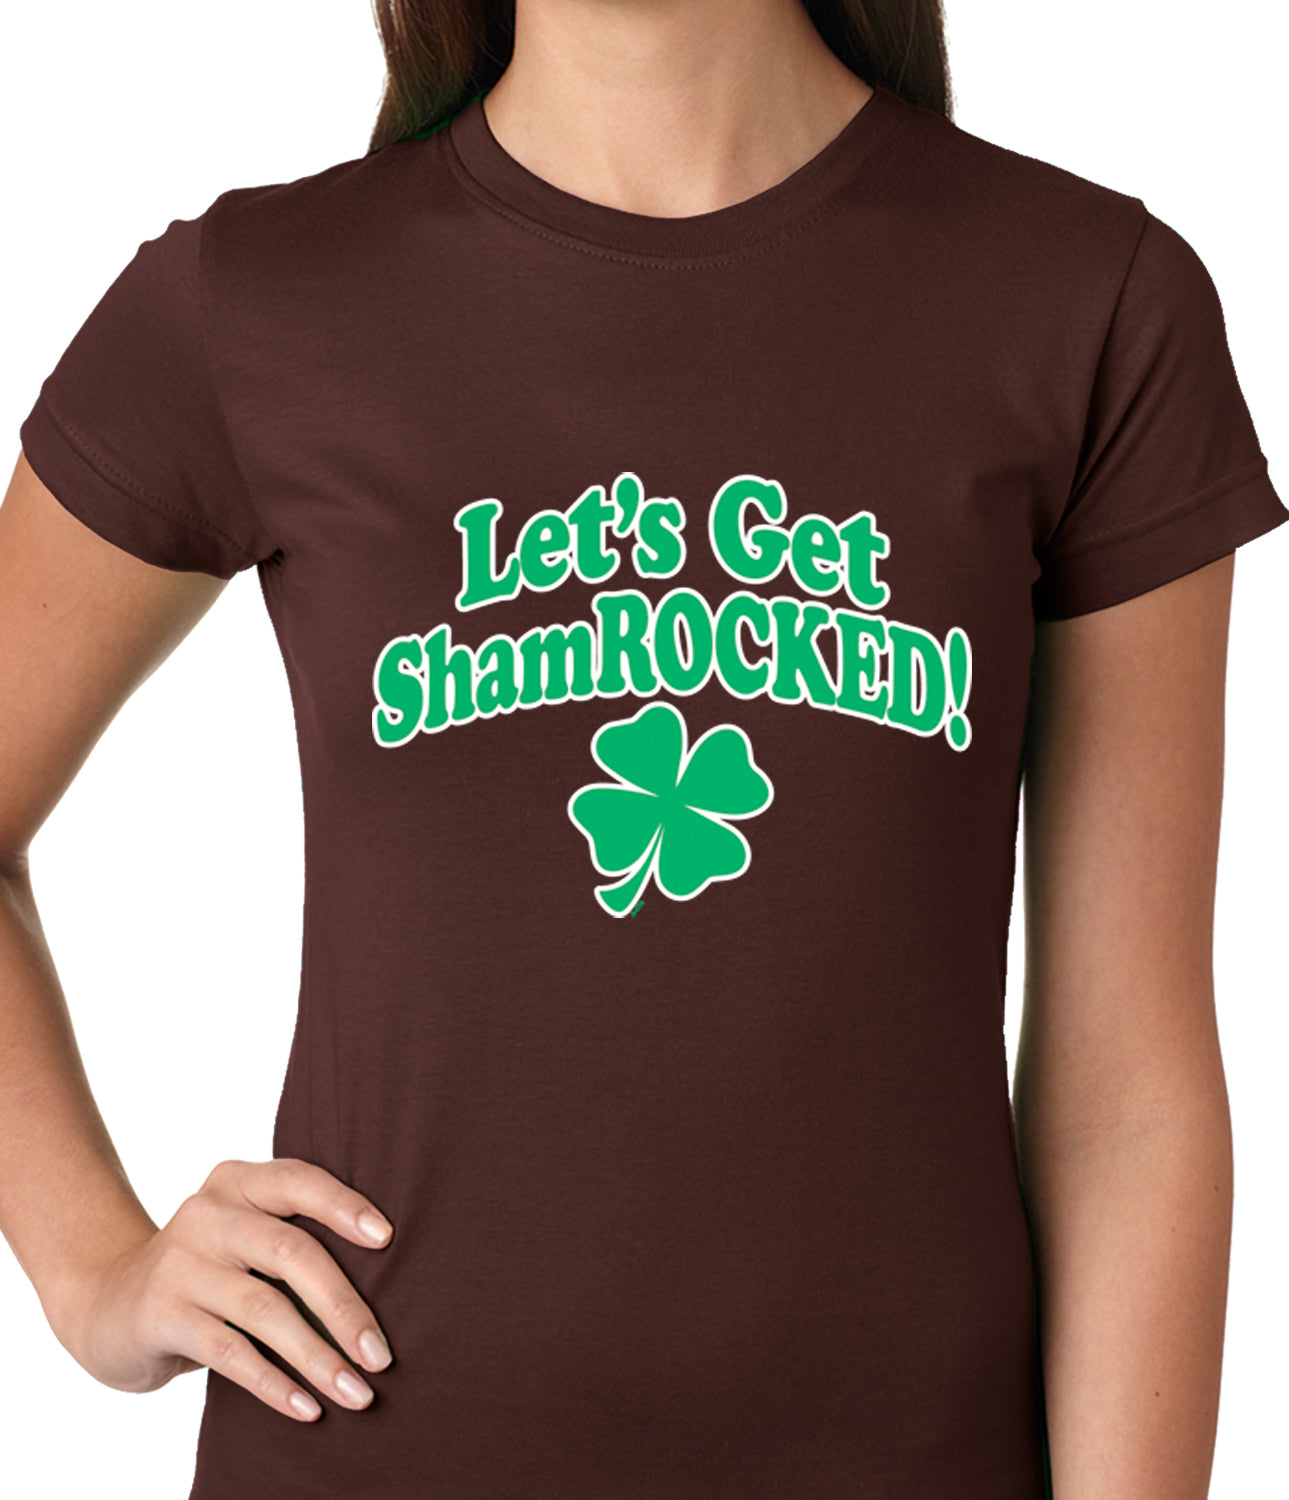 Let's Get ShamROCKED Funny Irish Ladies T-shirt Dark Brown